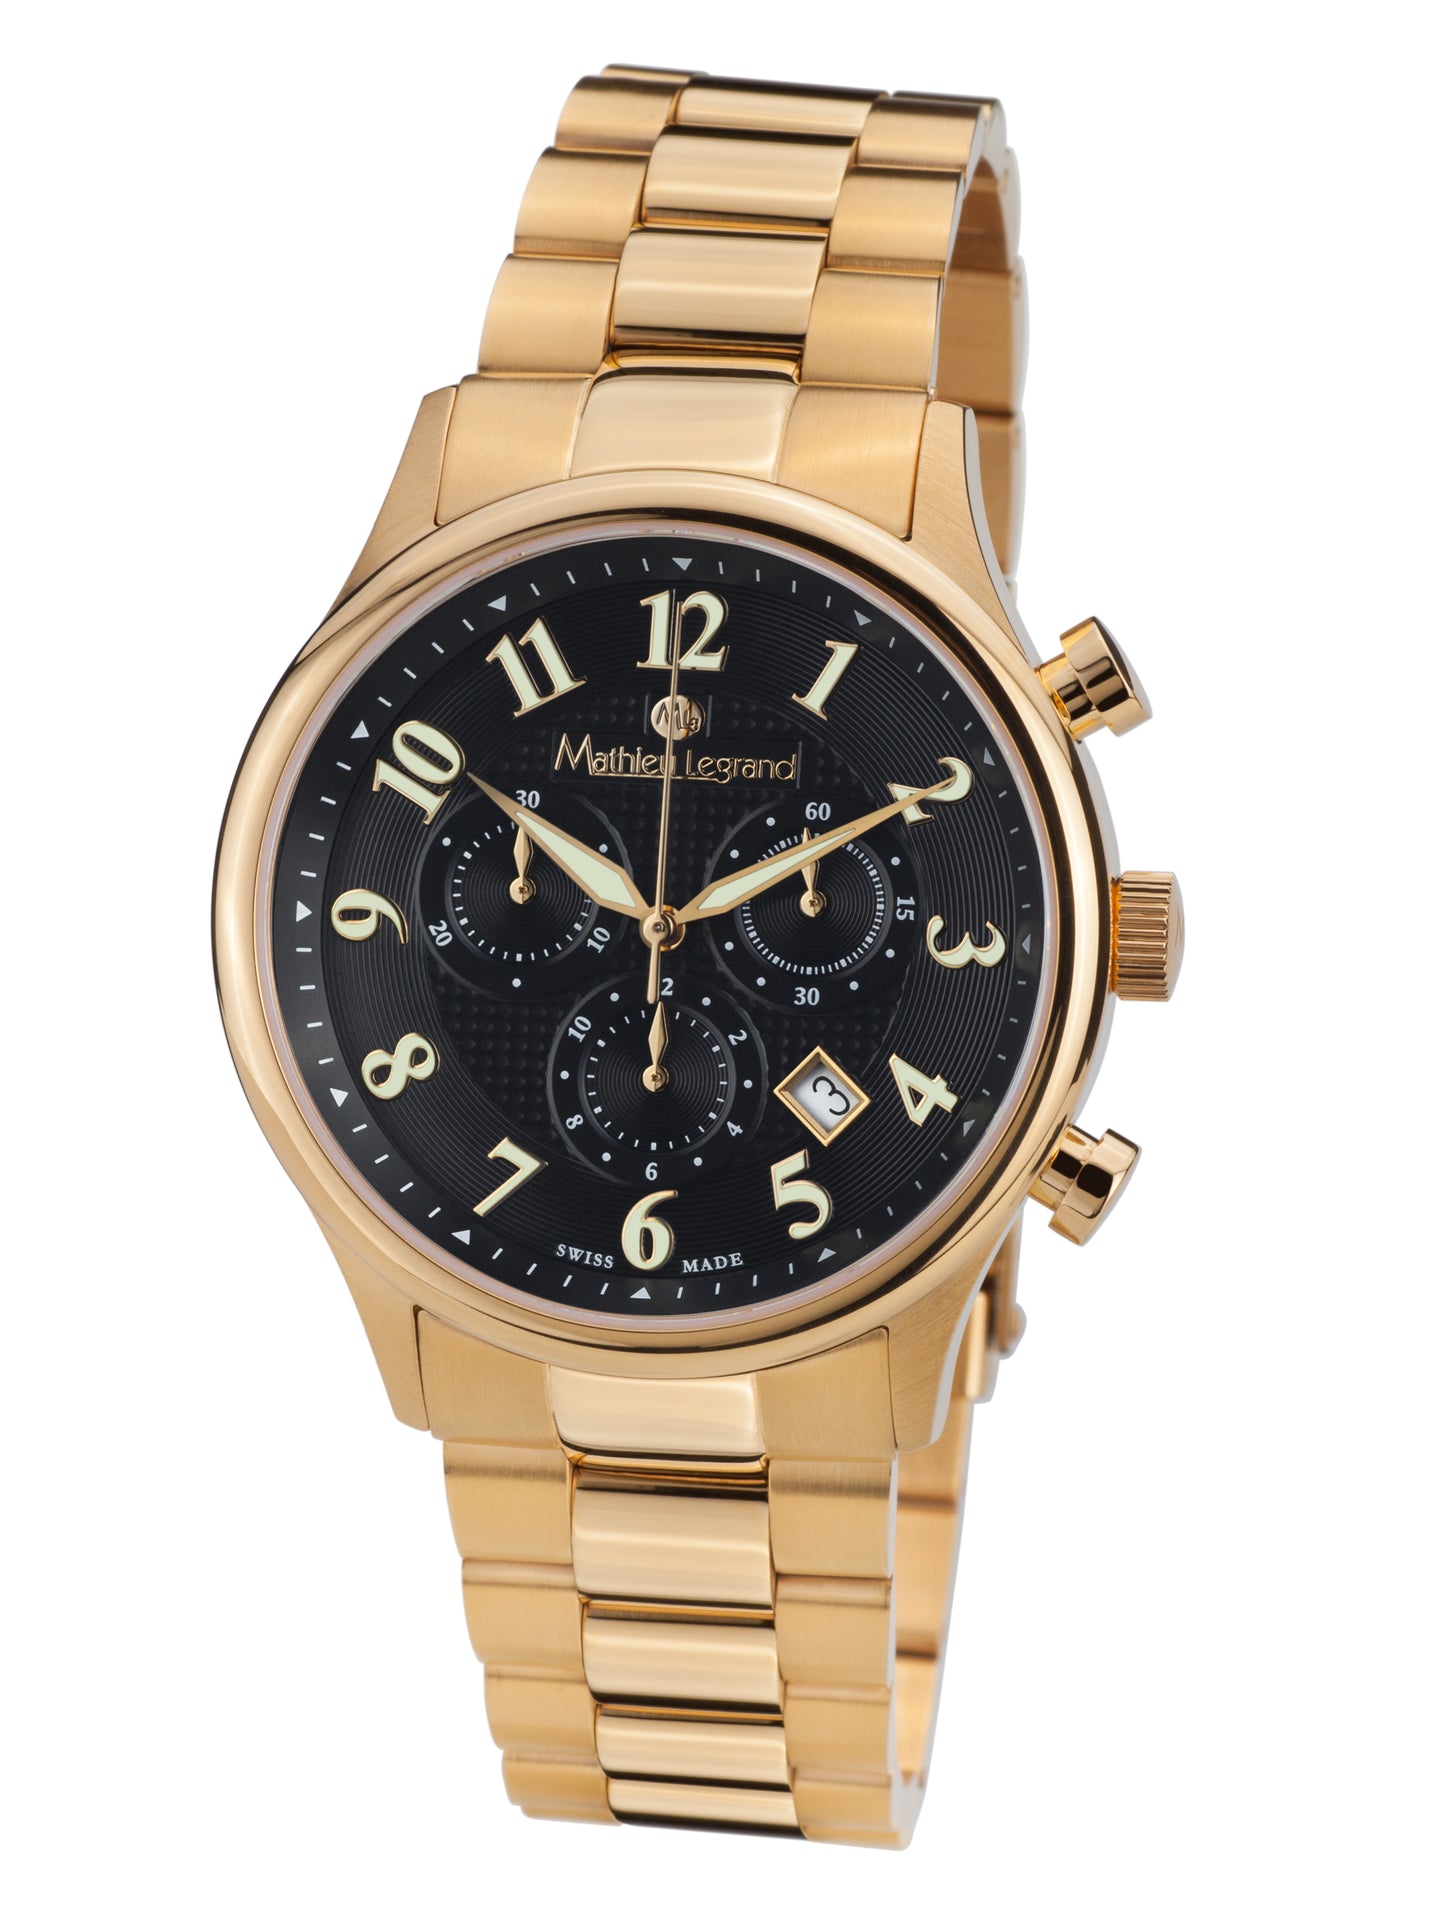 Automatic watches — Métropolitain — Mathieu Legrand — gold IP black